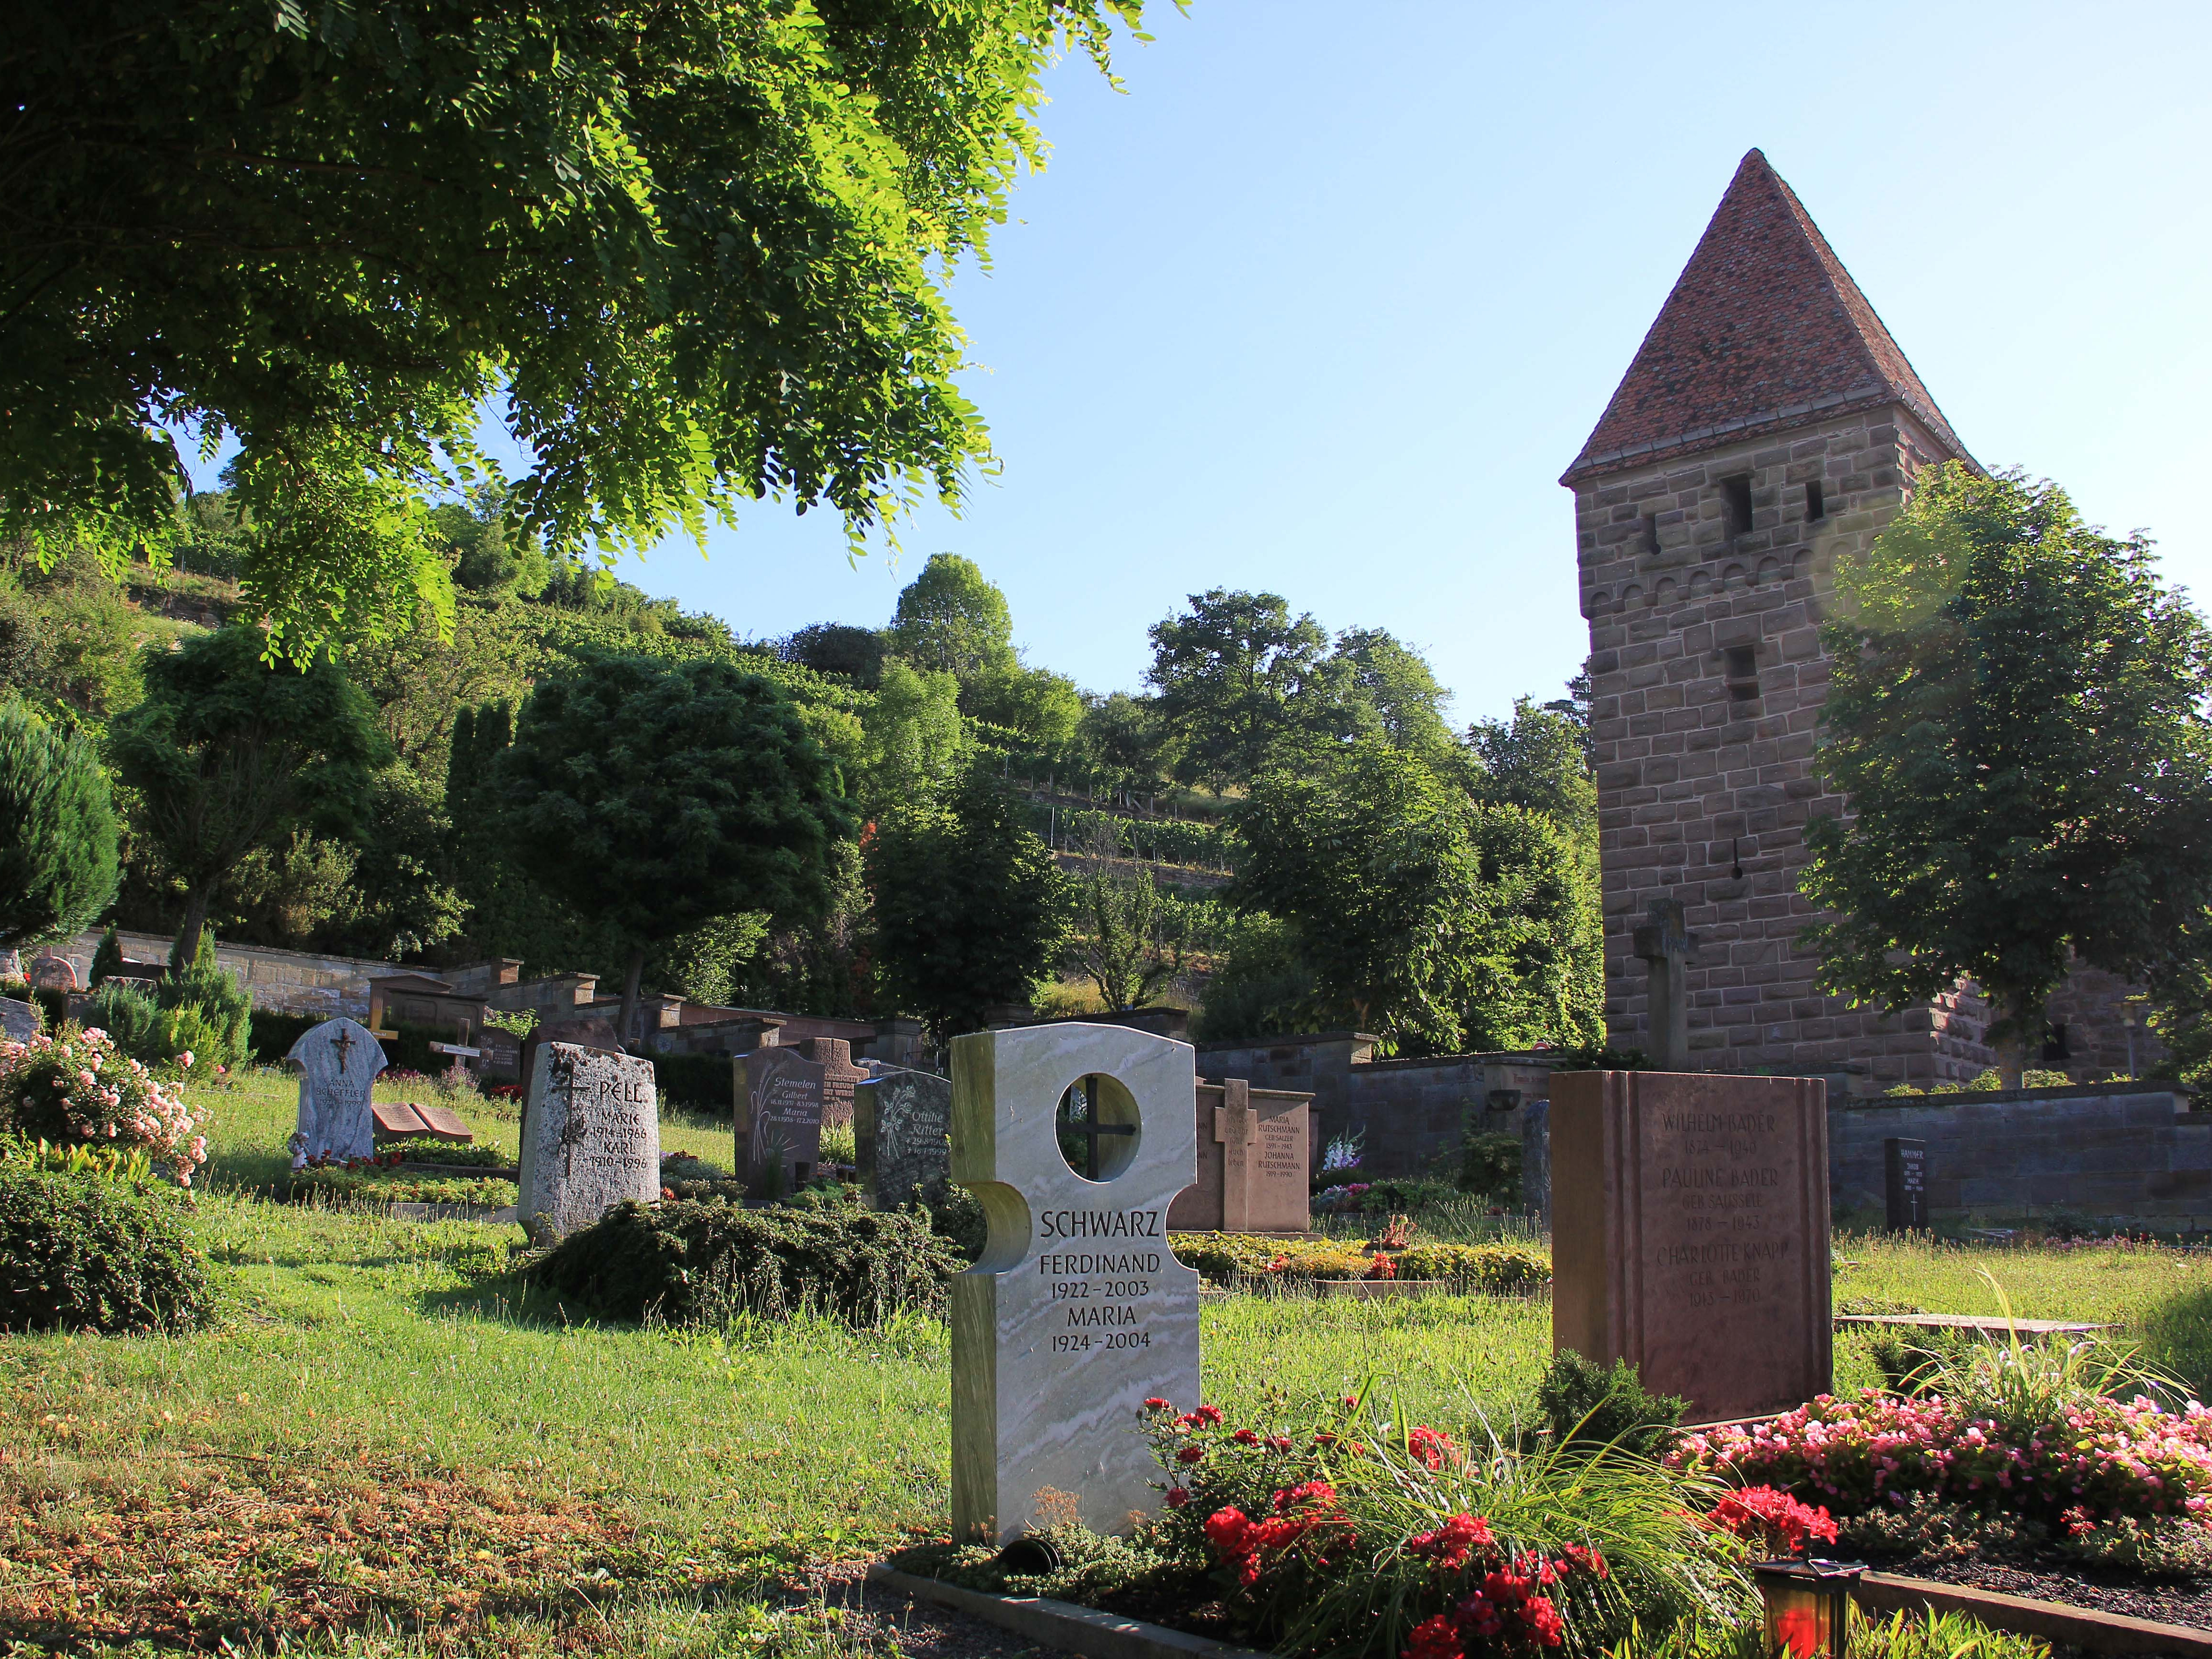 Blick auf Grabsteine, bepflanzte Gräber, im Hintergrund Bäume und ein mittelalterlicher Turm